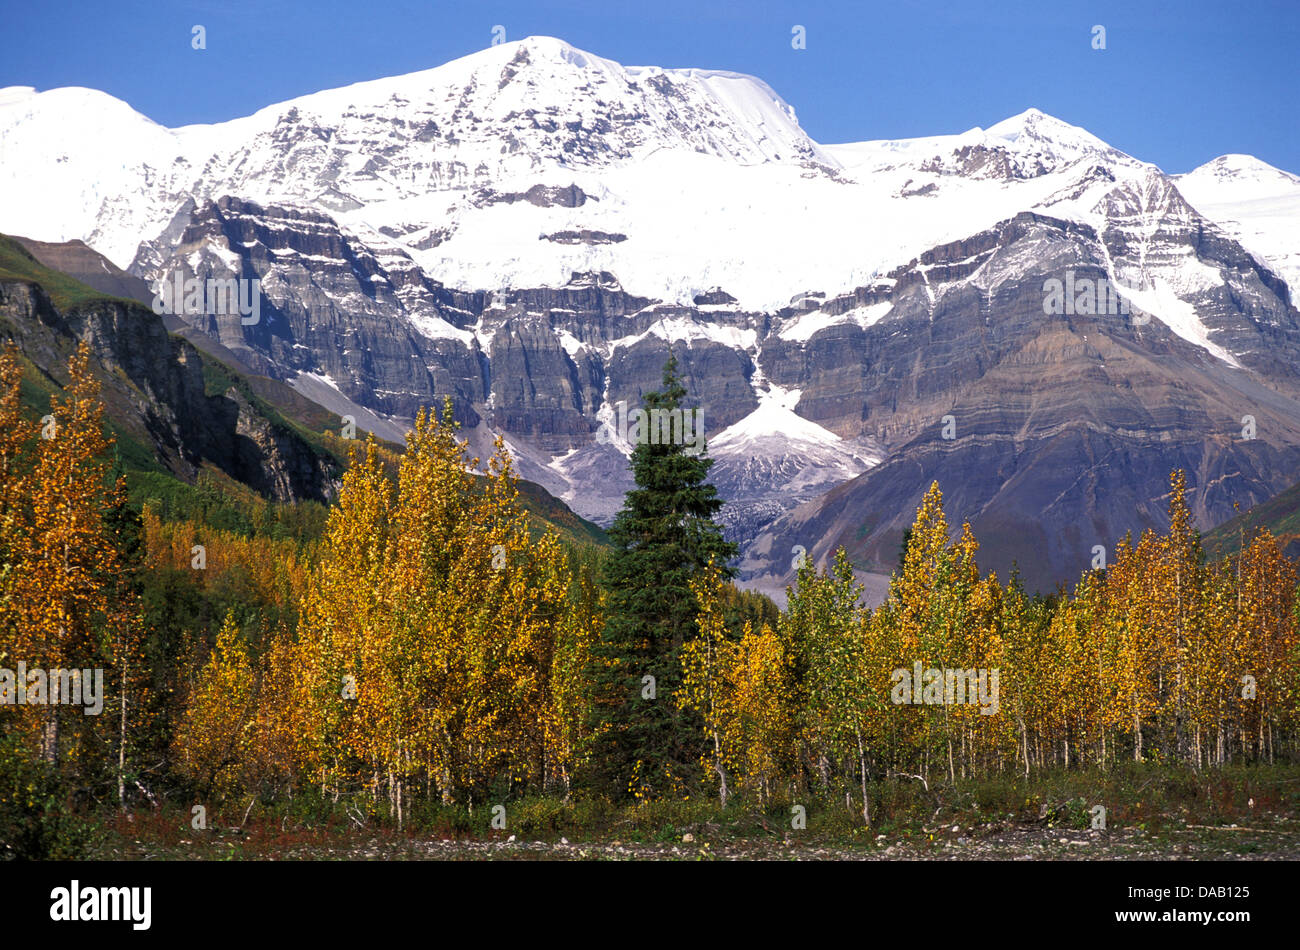 Homestead, Wrangell, Mountains, Pilgrim Family, Alaska, USA, autumn, leaves, snowy, mountain, sunny, snowcap, snowcapped, peak Stock Photo